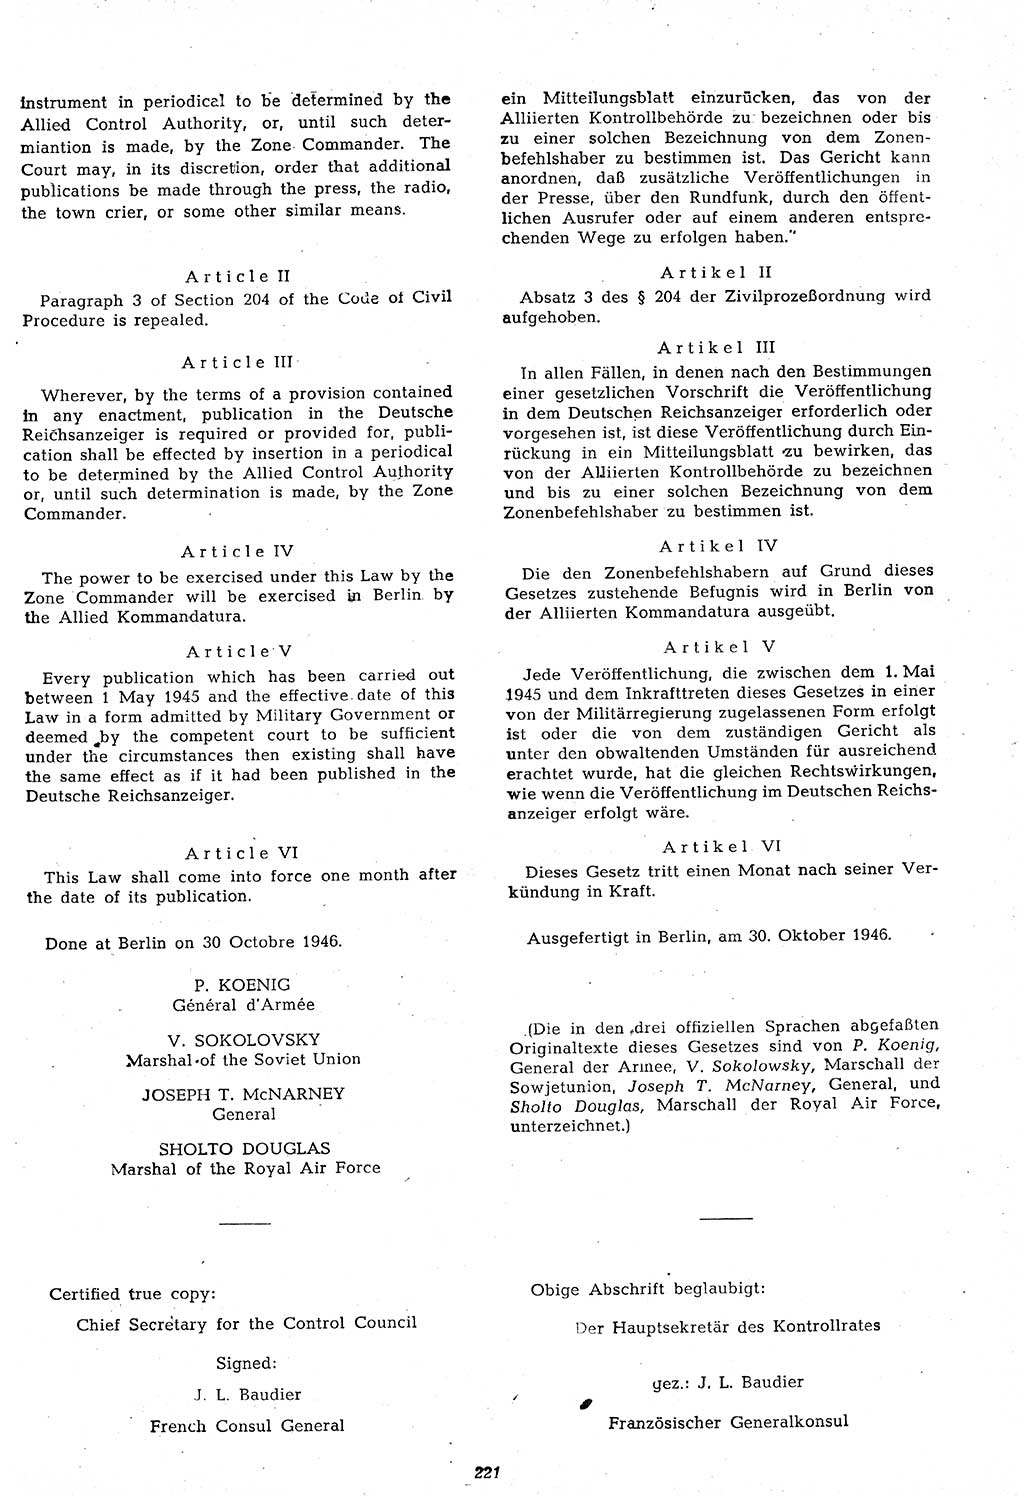 Amtsblatt des Kontrollrats (ABlKR) in Deutschland 1946, Seite 221/2 (ABlKR Dtl. 1946, S. 221/2)